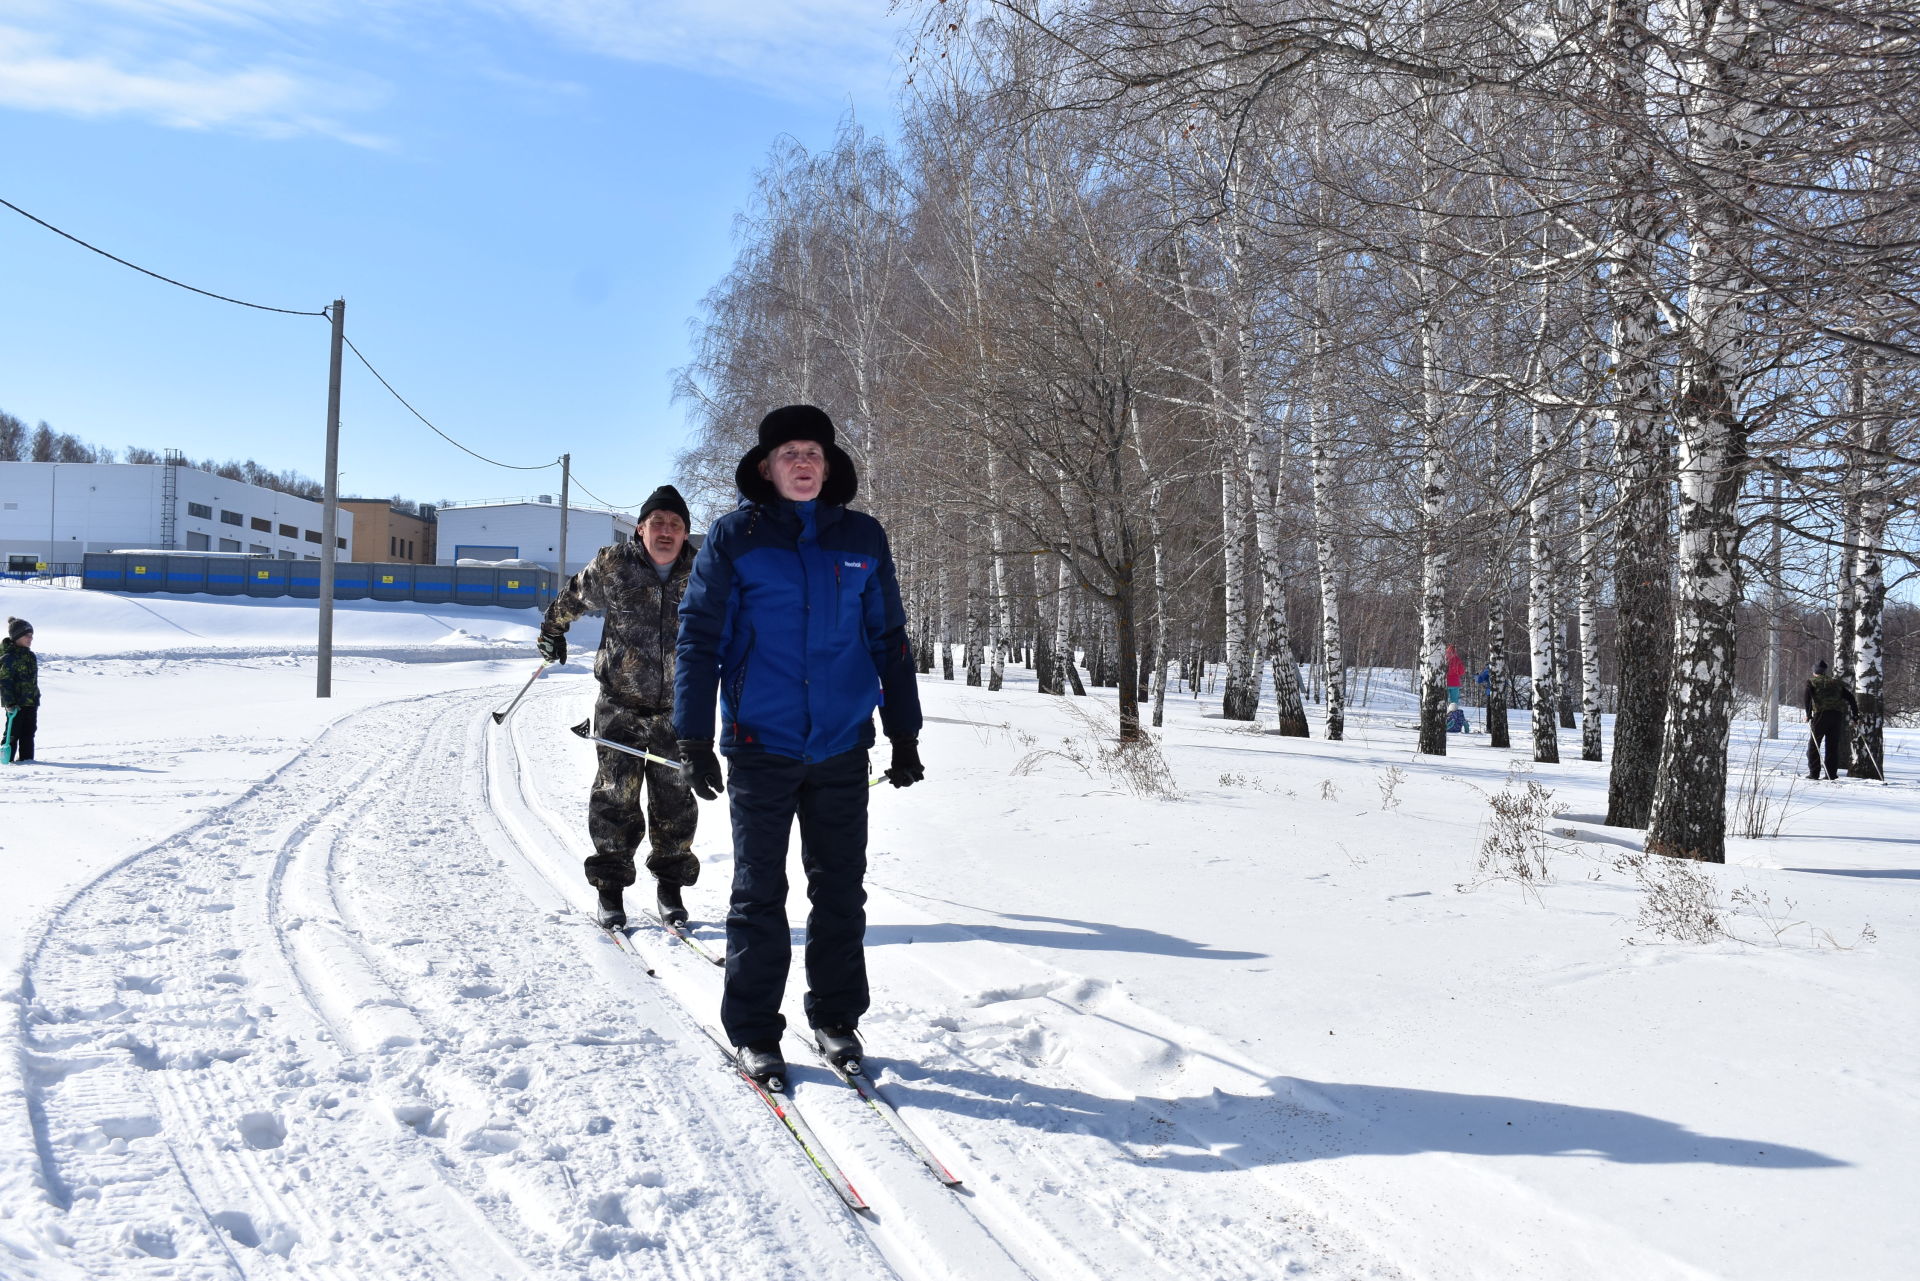 Верхнеуслонский мухтасибат организовал лыжную прогулку